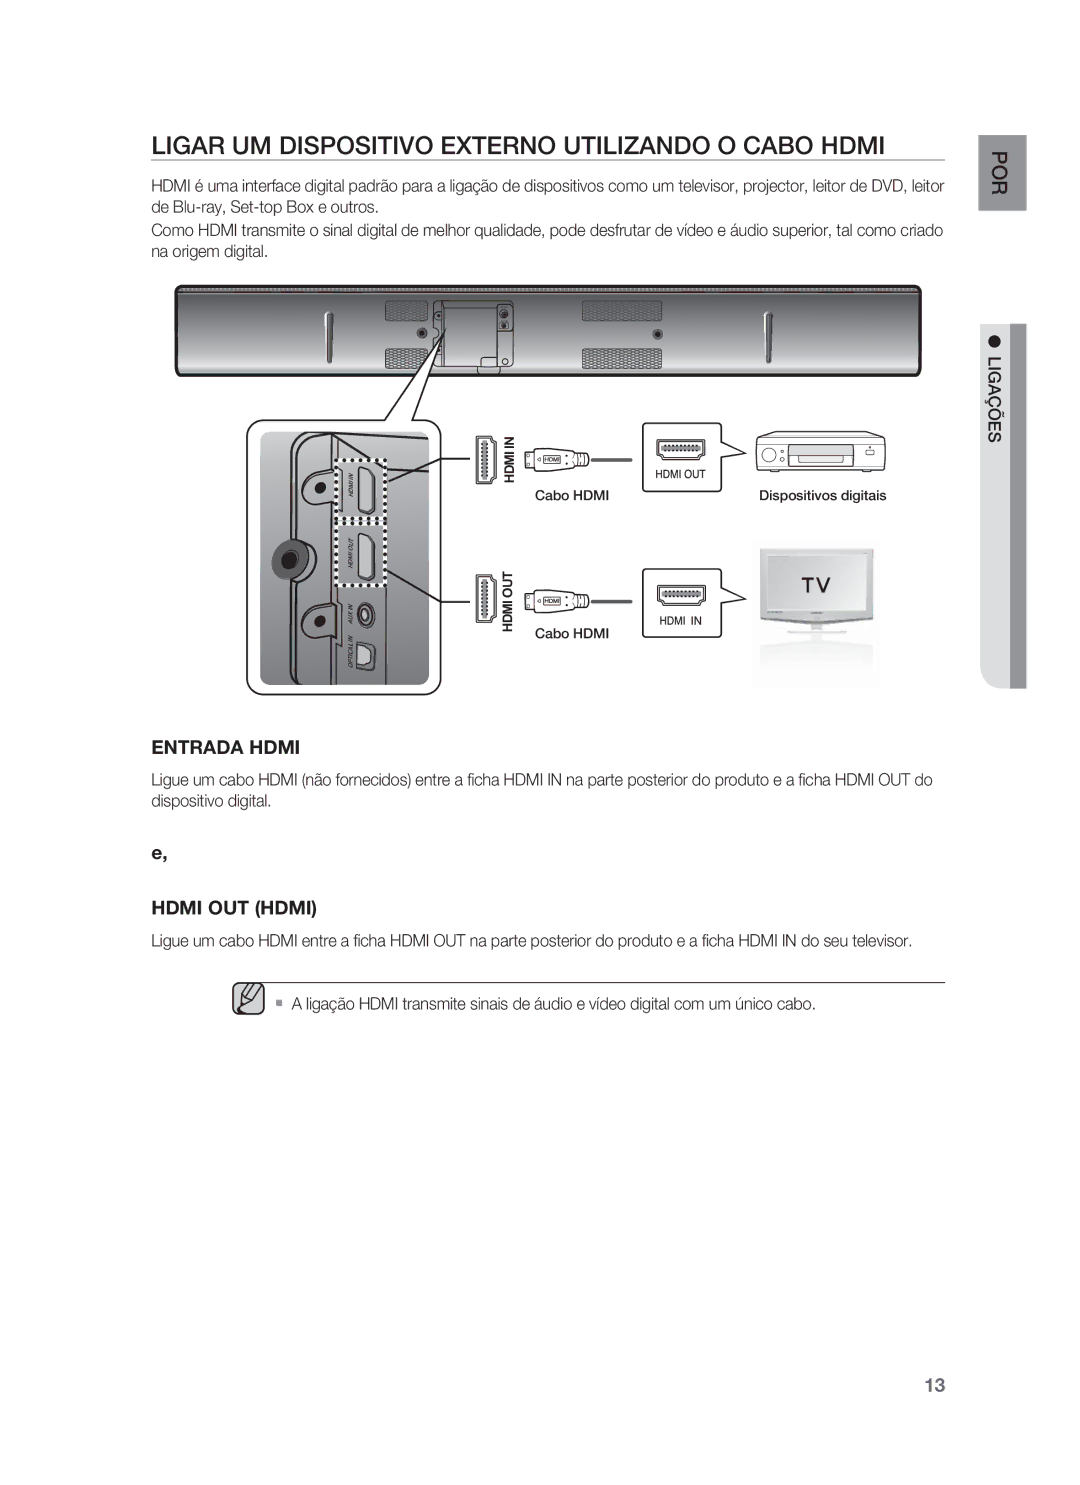 Samsung HW-F850/ZF manual Ligar UM Dispositivo Externo Utilizando O Cabo Hdmi, Entrada Hdmi 